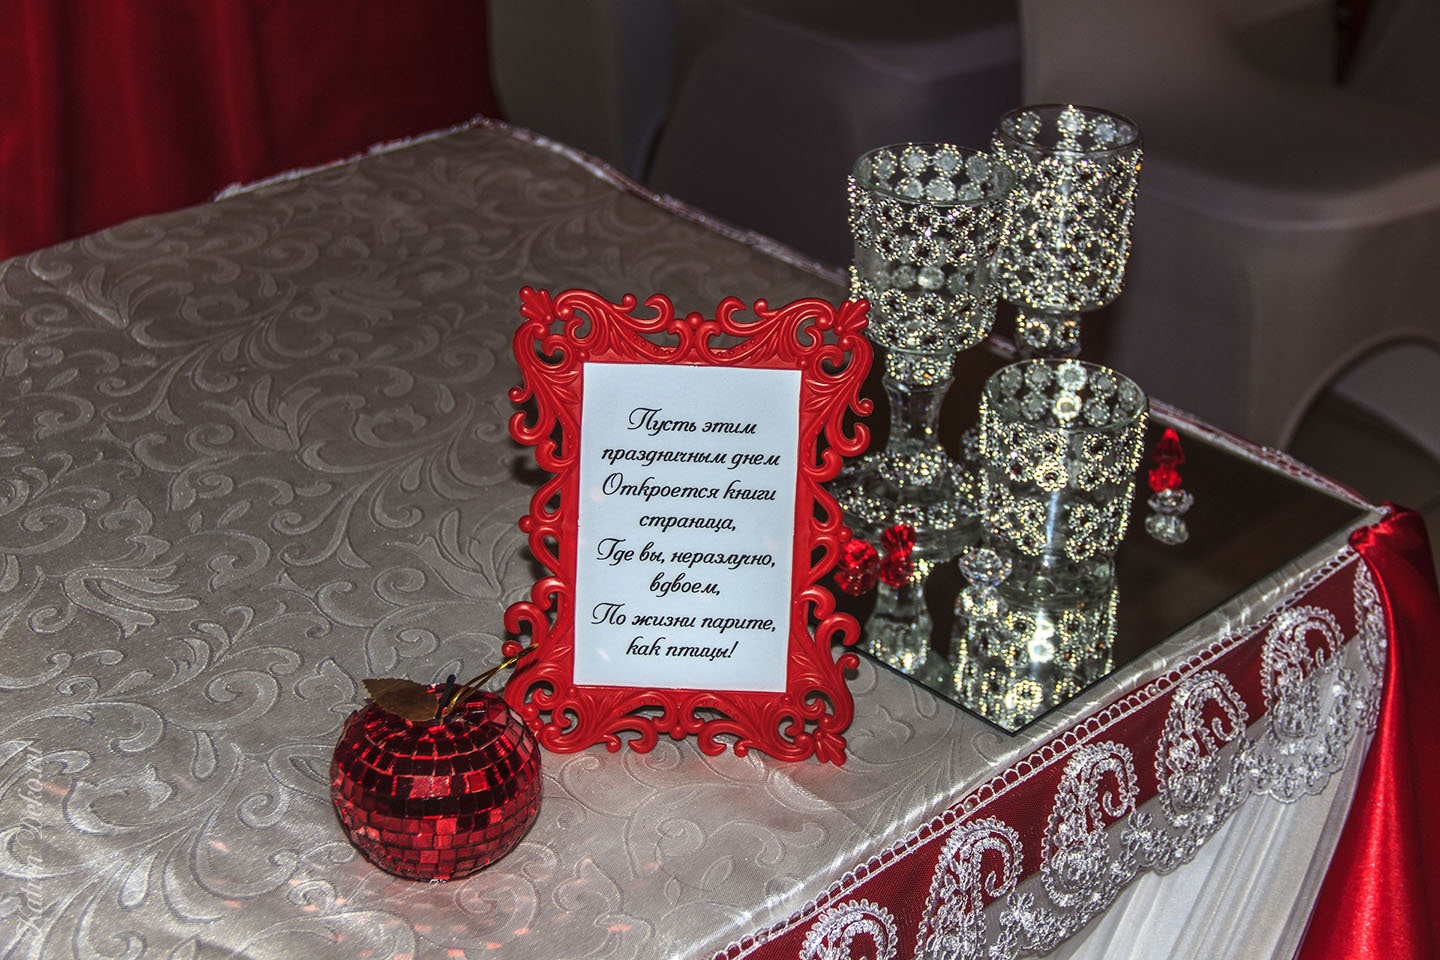 Оформление свадьбы в ресторане "Александрия", Подольск